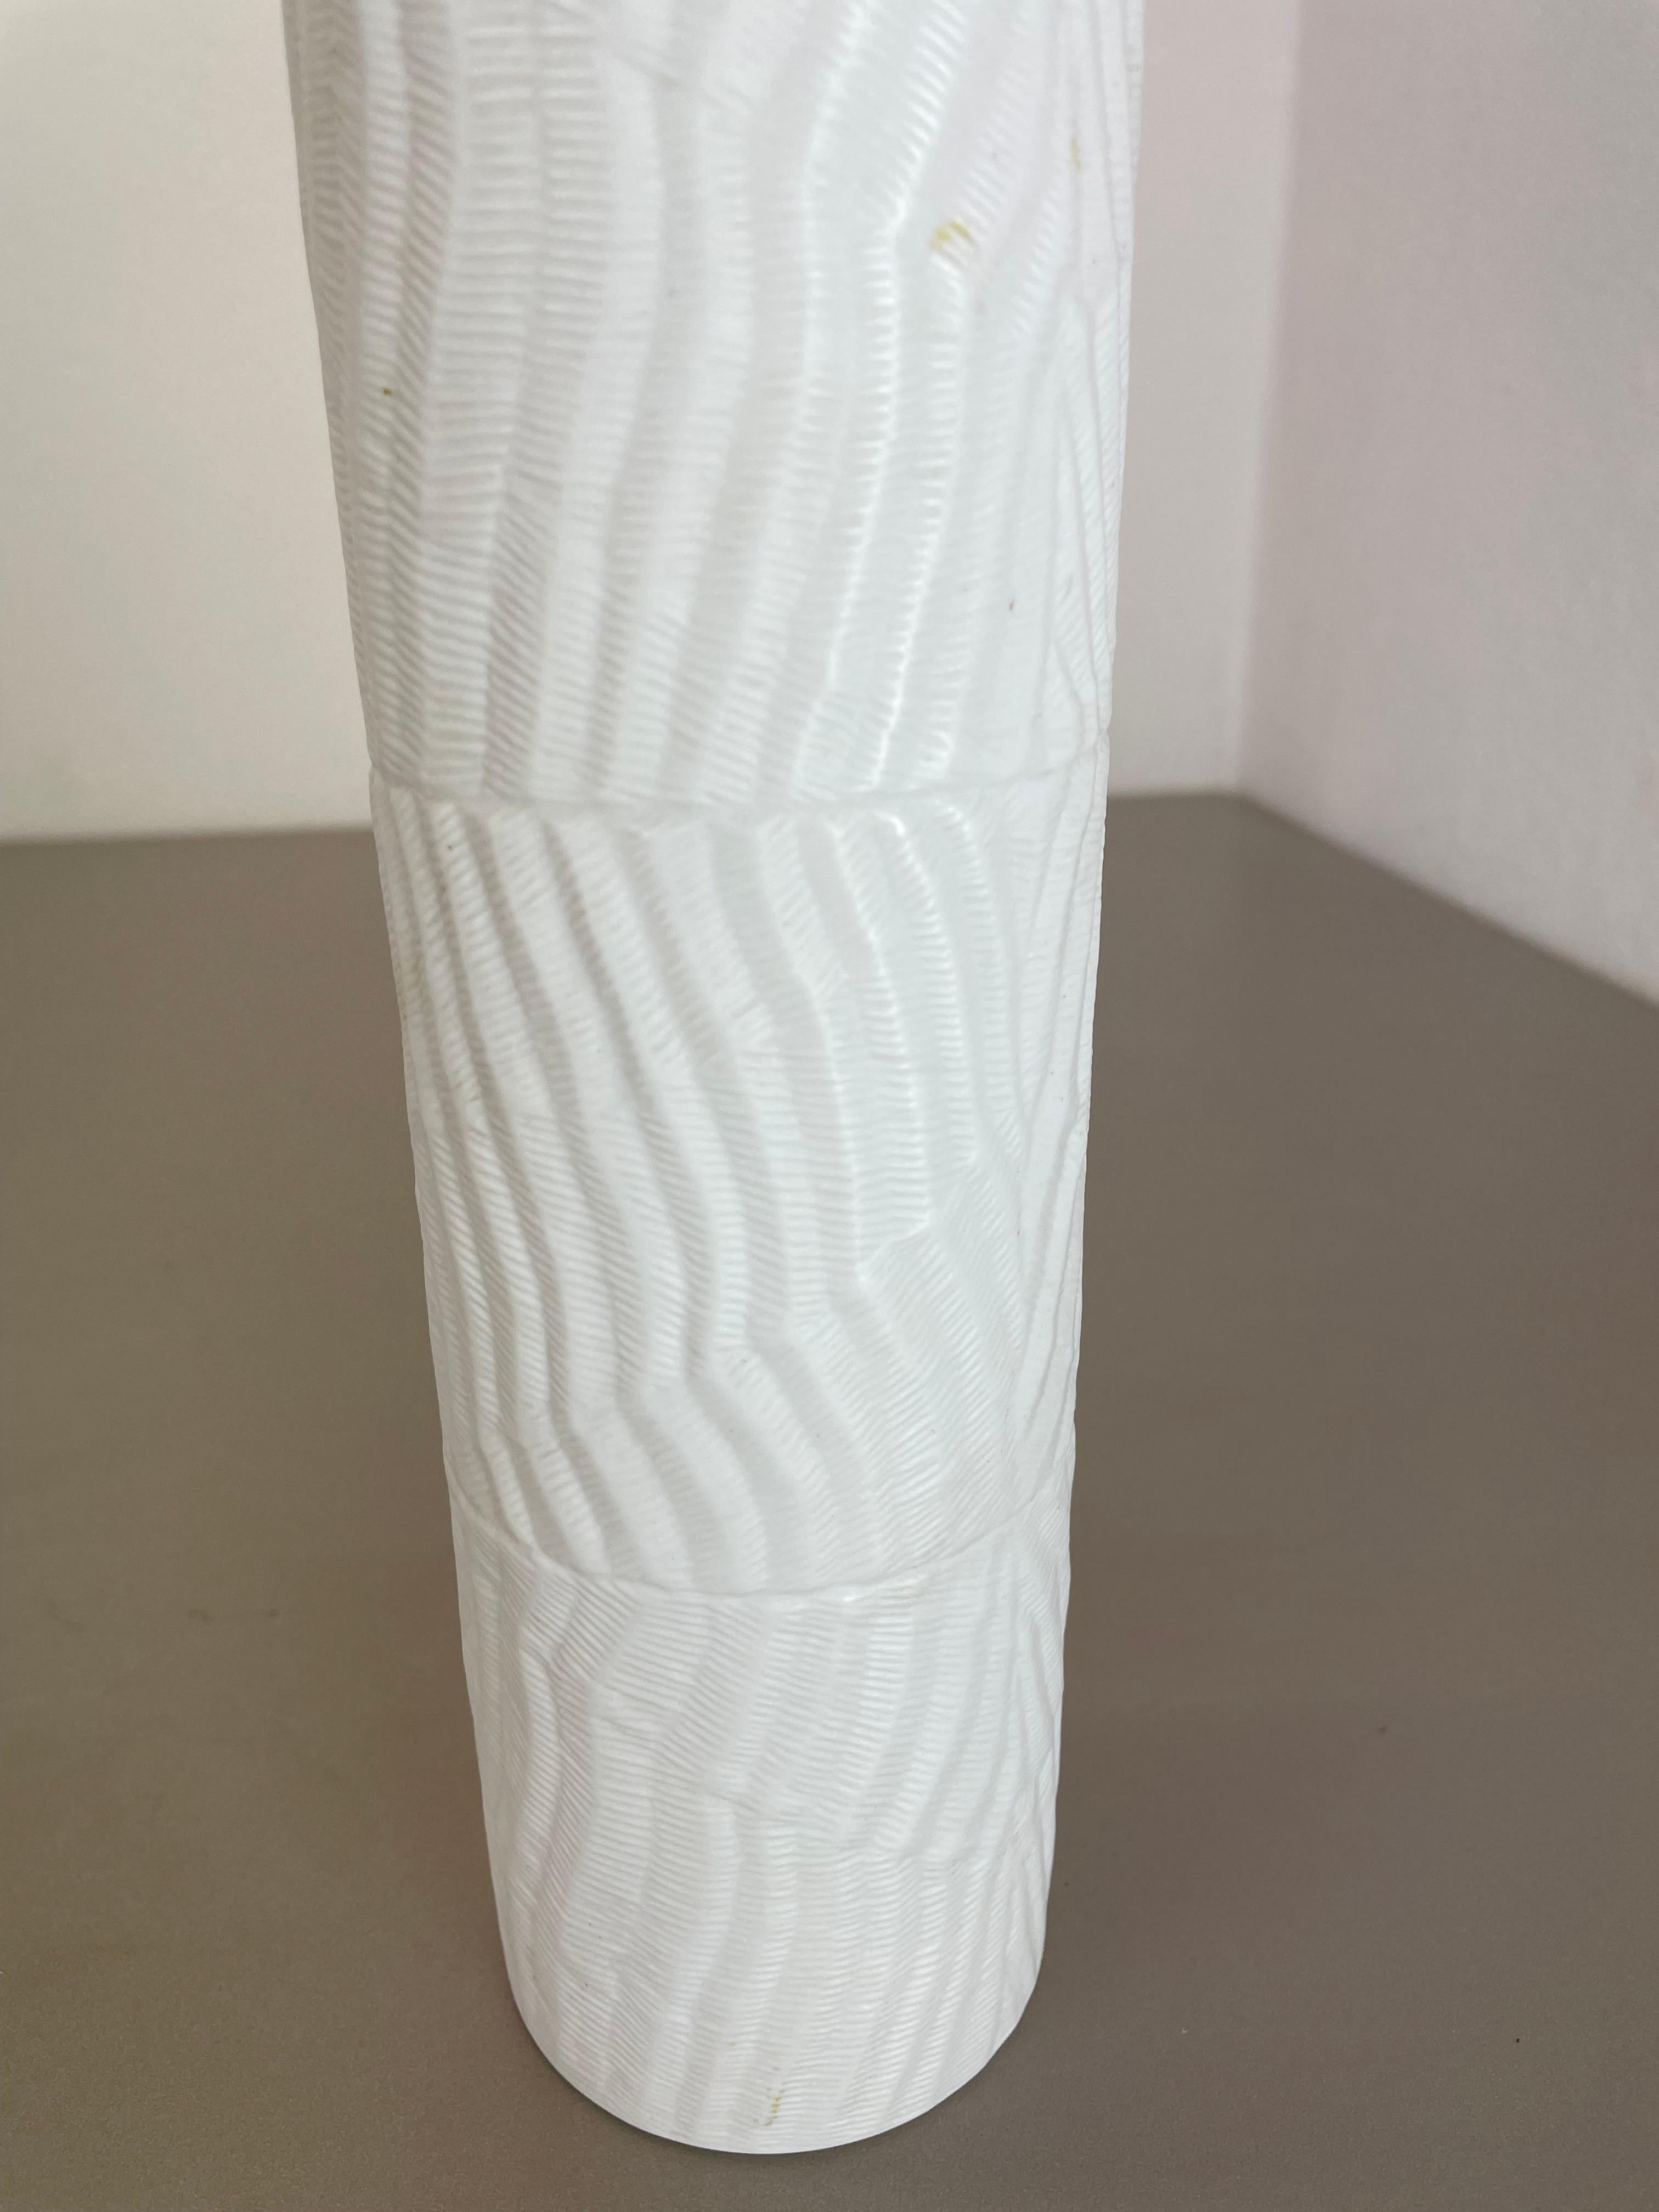 Large 23cm OP Art Vase Porcelain Vase by Martin Freyer for Rosenthal, Germany For Sale 5